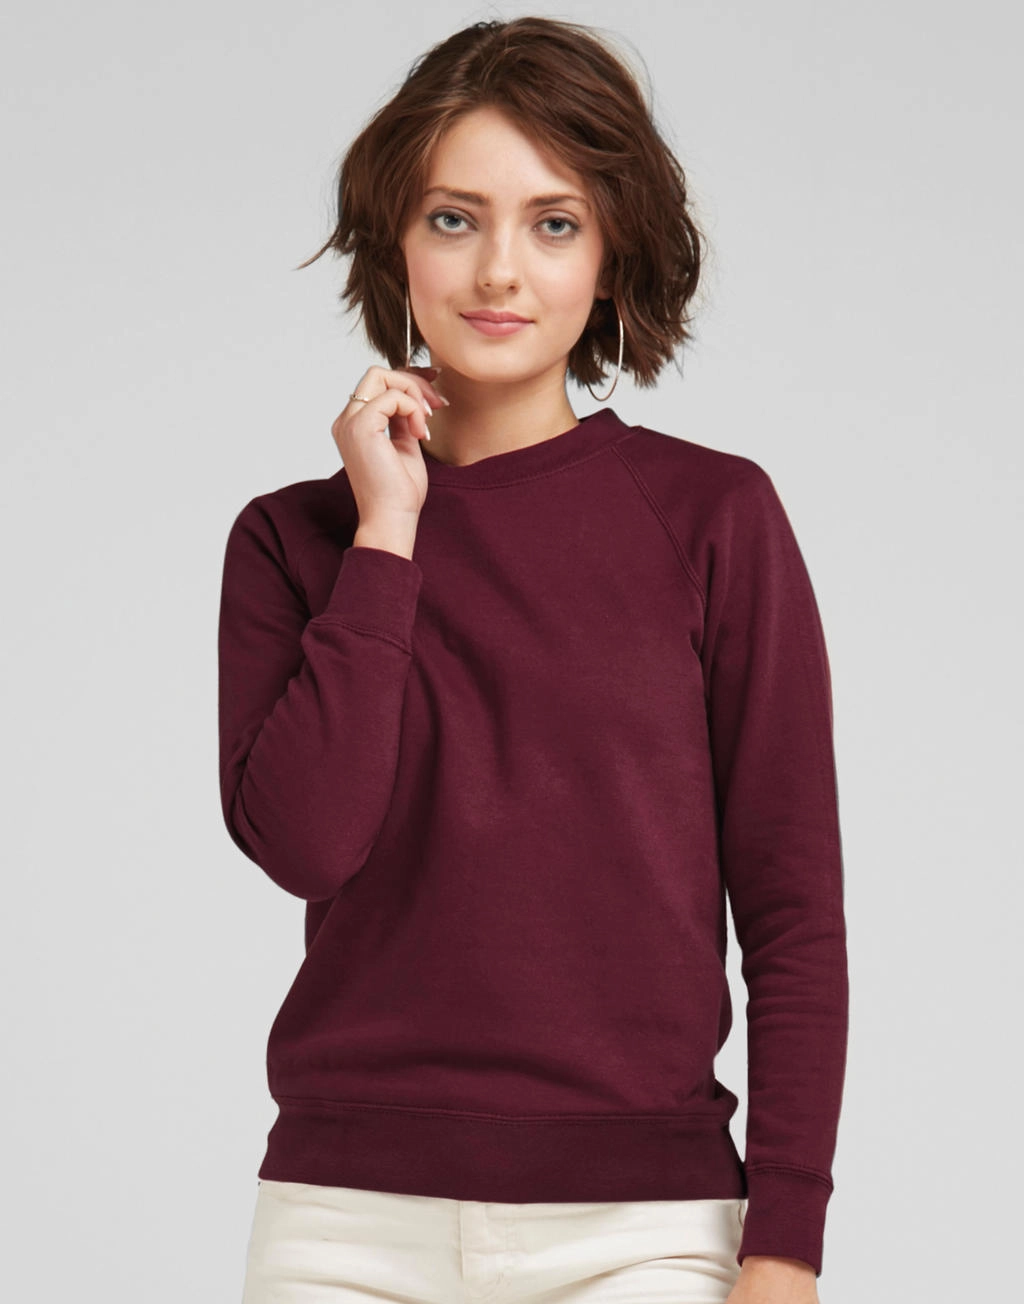 Raglan Sweatshirt Women zum Besticken und Bedrucken mit Ihren Logo, Schriftzug oder Motiv.